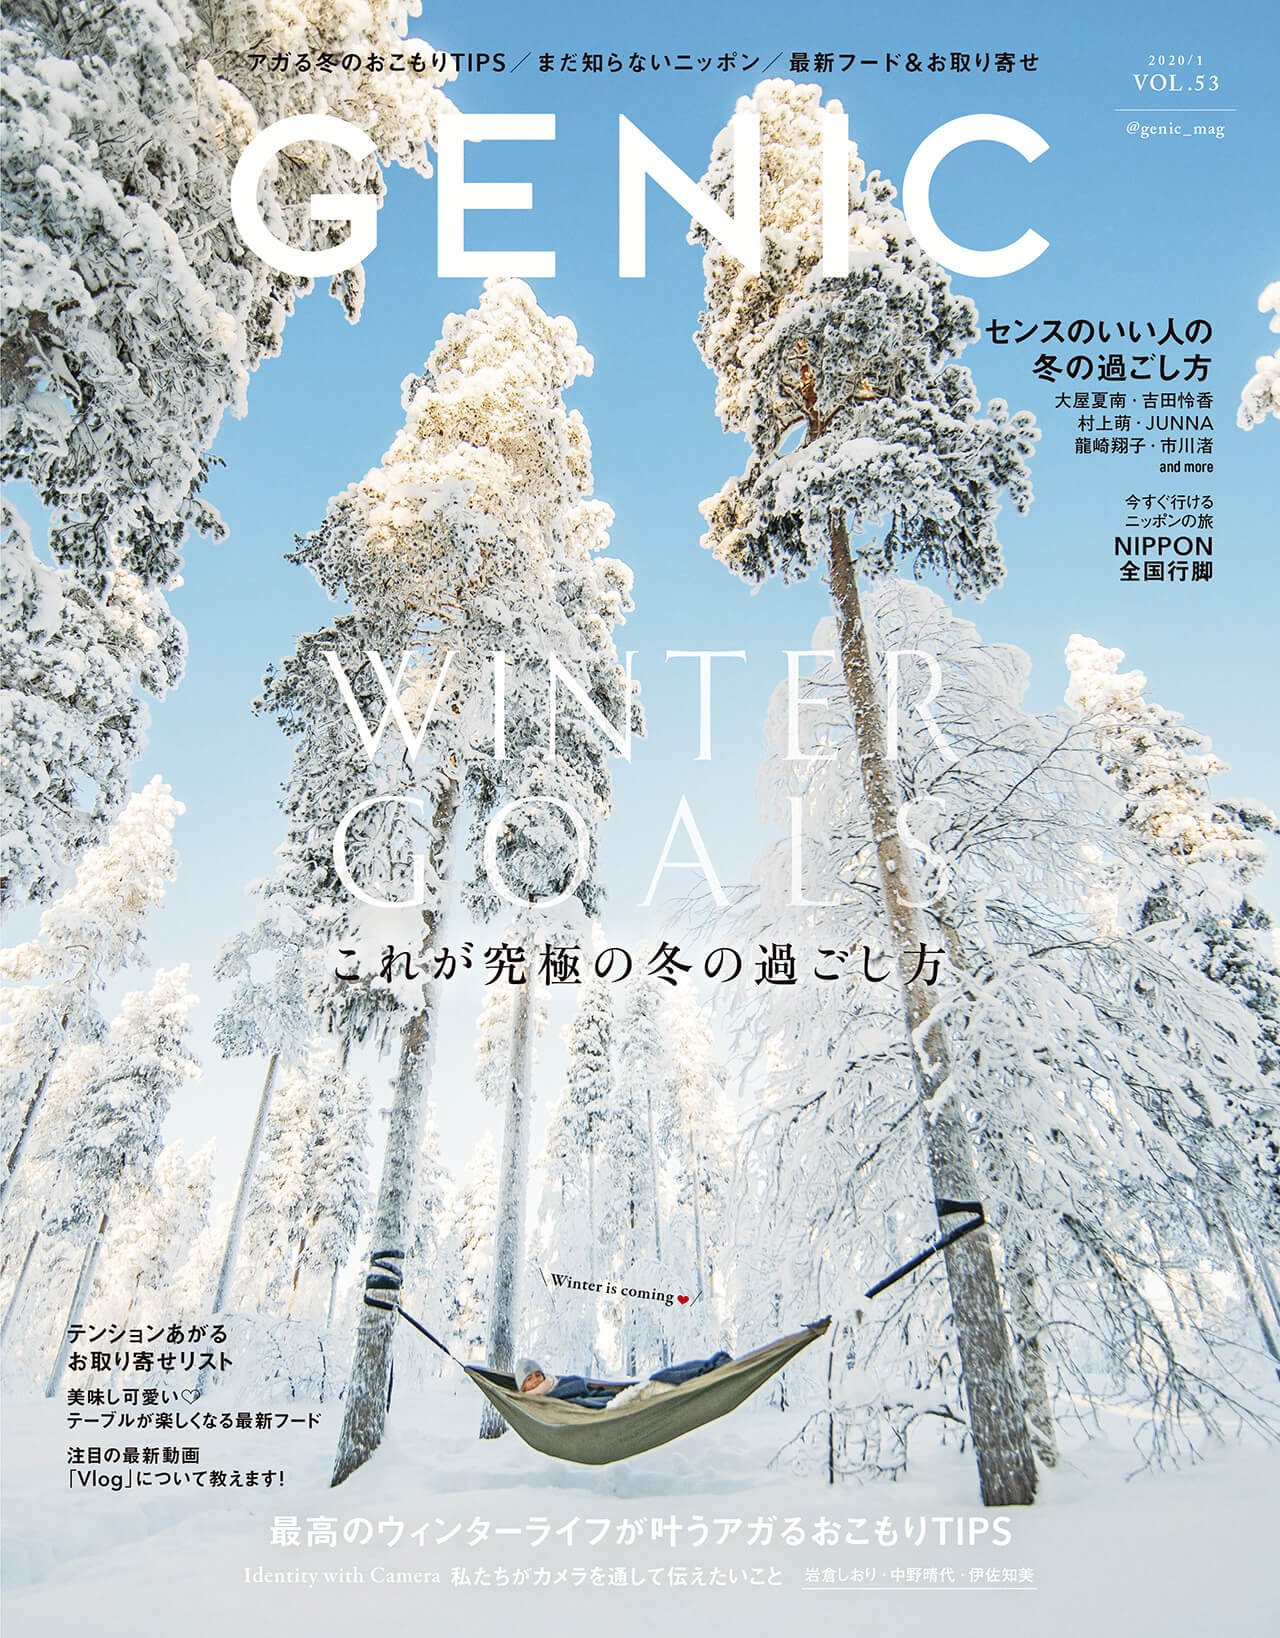 アガる冬 をテーマに究極の冬の過ごし方を特集 雑誌genic ジェニック 年1月号は12月7日発売 ミツバチワークス株式会社のプレスリリース